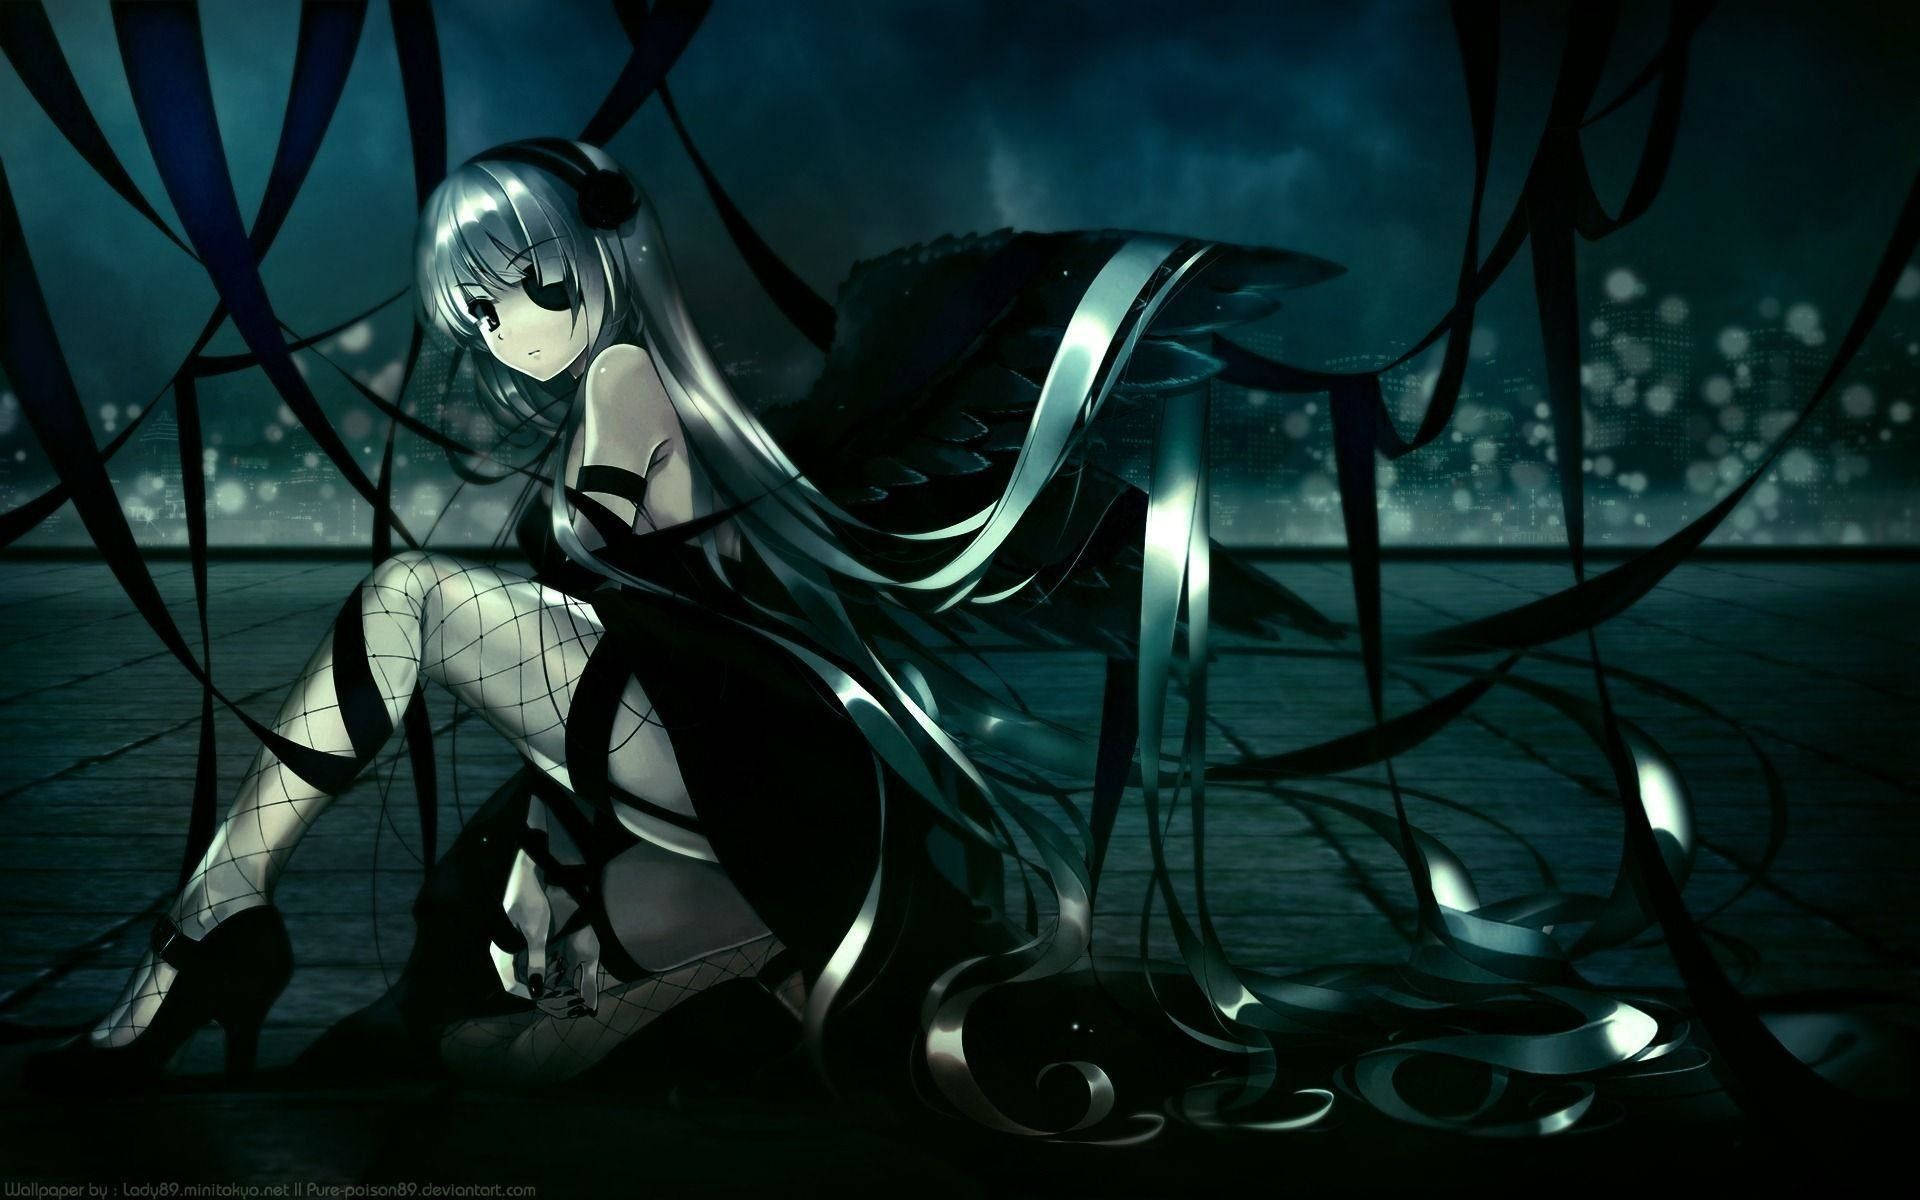 Unpersonaje De Anime Oscuro Y Sombrío. Fondo de pantalla